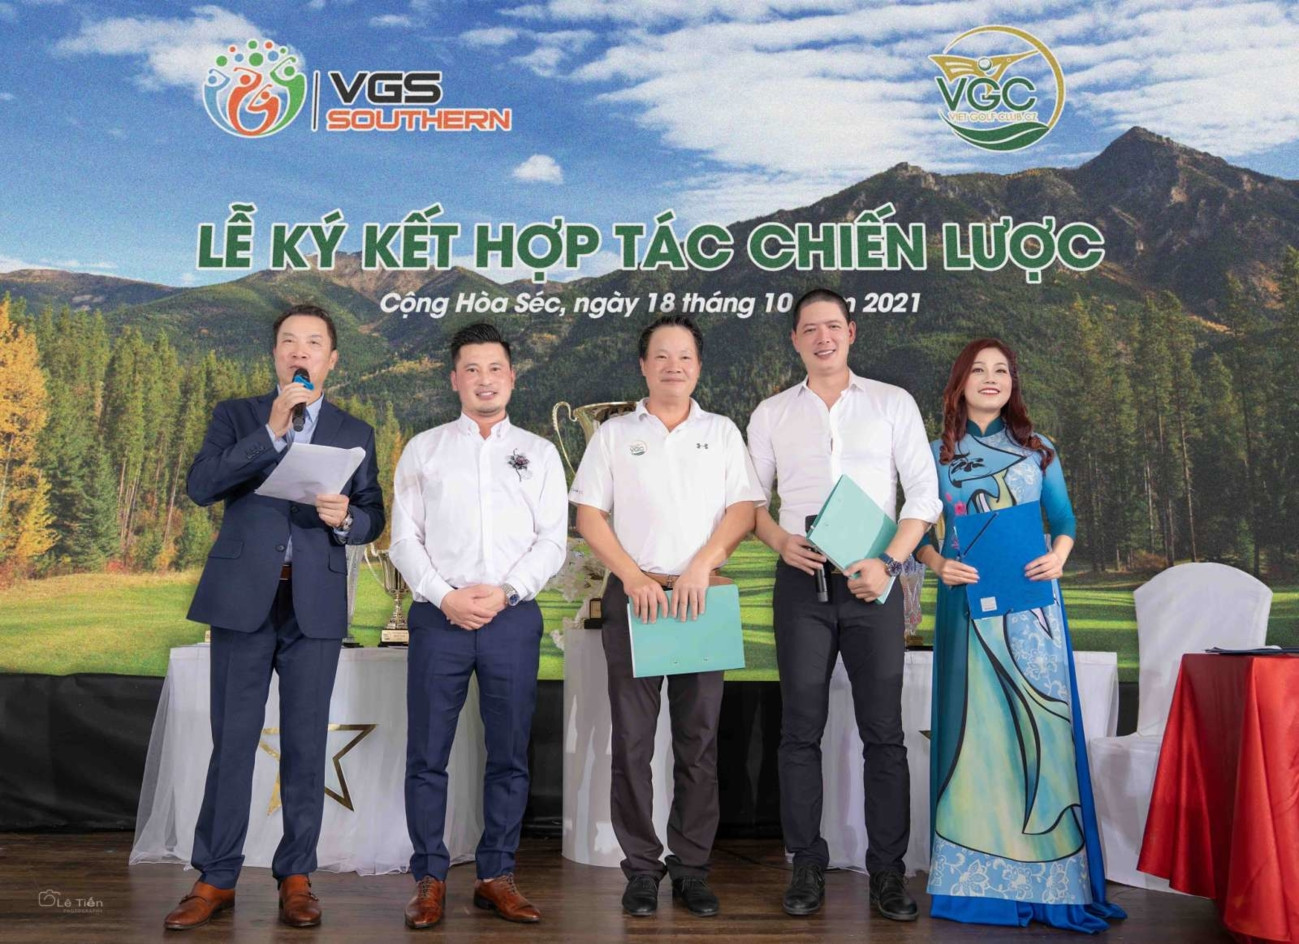 VGS Southern ký kết hợp tác với Viet Golf Club tại Cộng Hòa Séc - Ảnh 1.